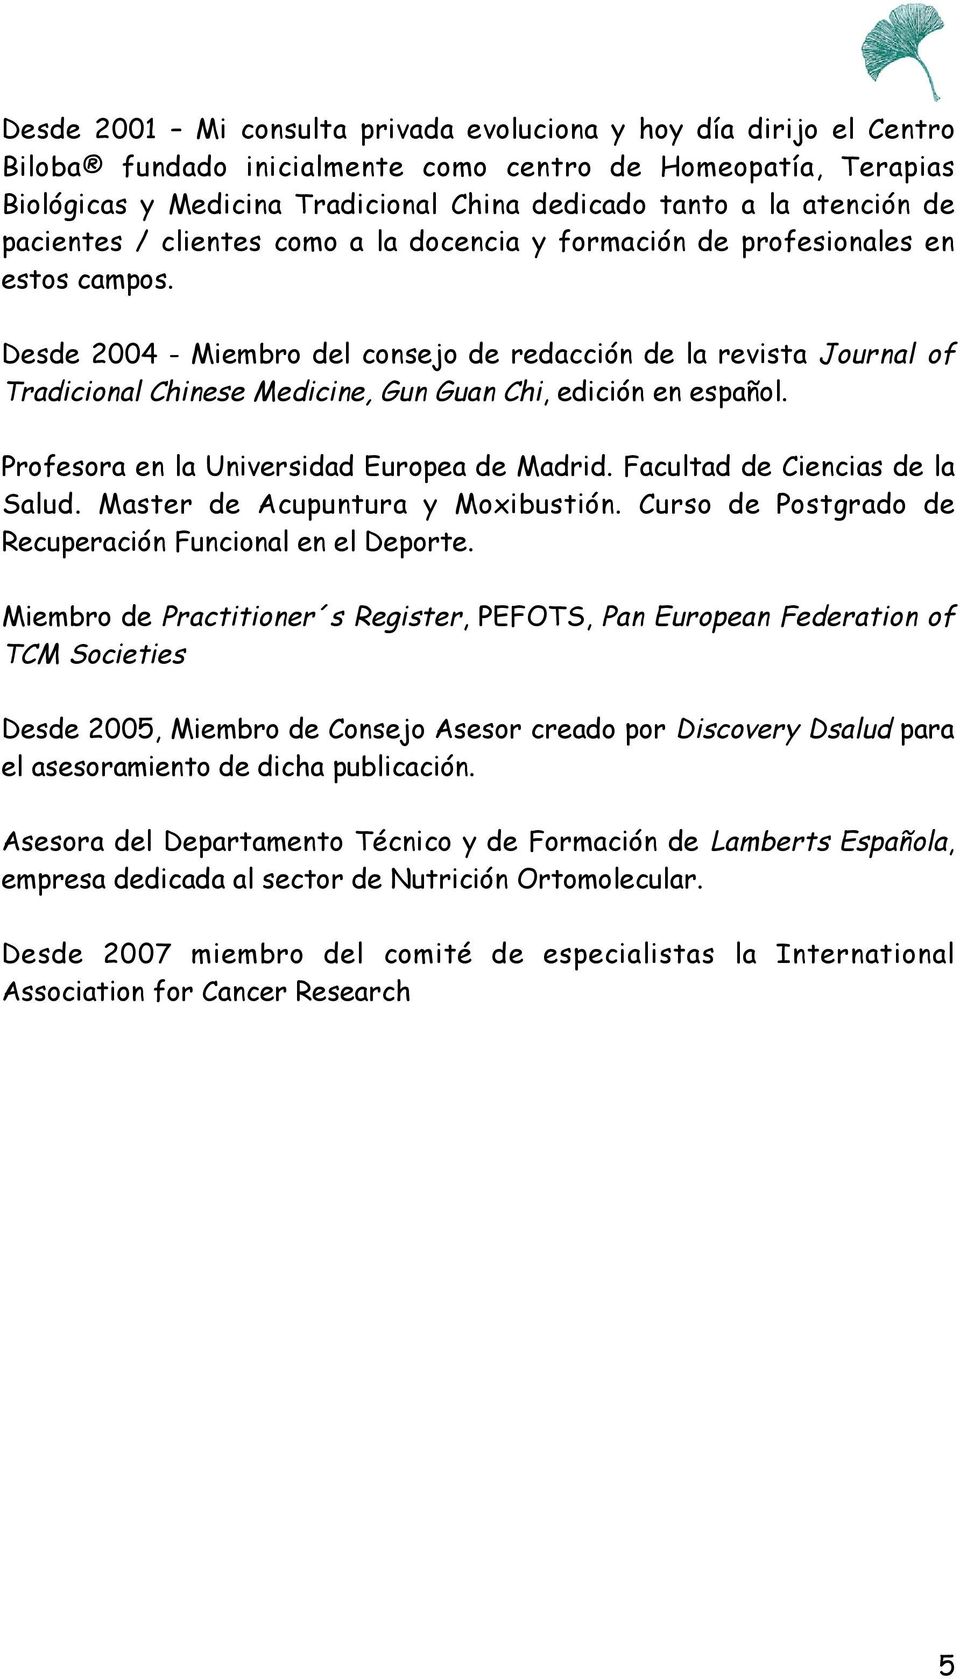 Desde 2004 - Miembro del consejo de redacción de la revista Journal of Tradicional Chinese Medicine, Gun Guan Chi, edición en español. Profesora en la Universidad Europea de Madrid.